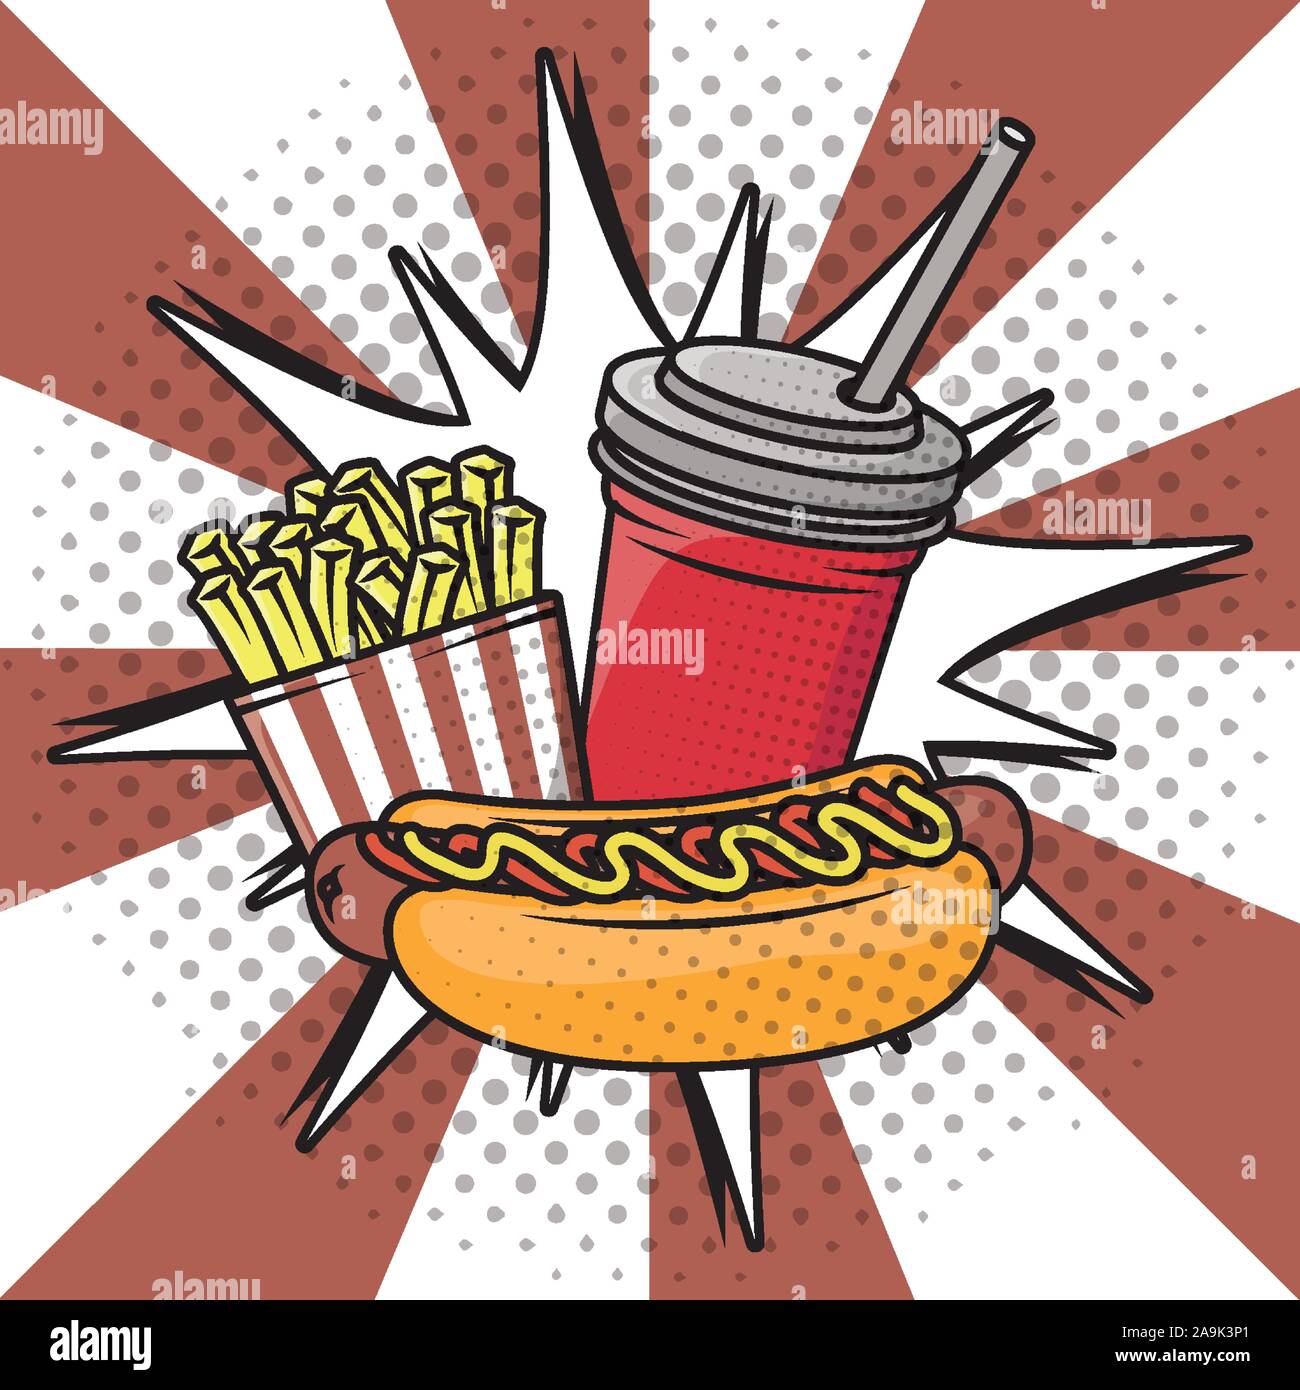 søsyge Grader celsius vigtig delicious fast food pop art style Stock Vector Image & Art - Alamy